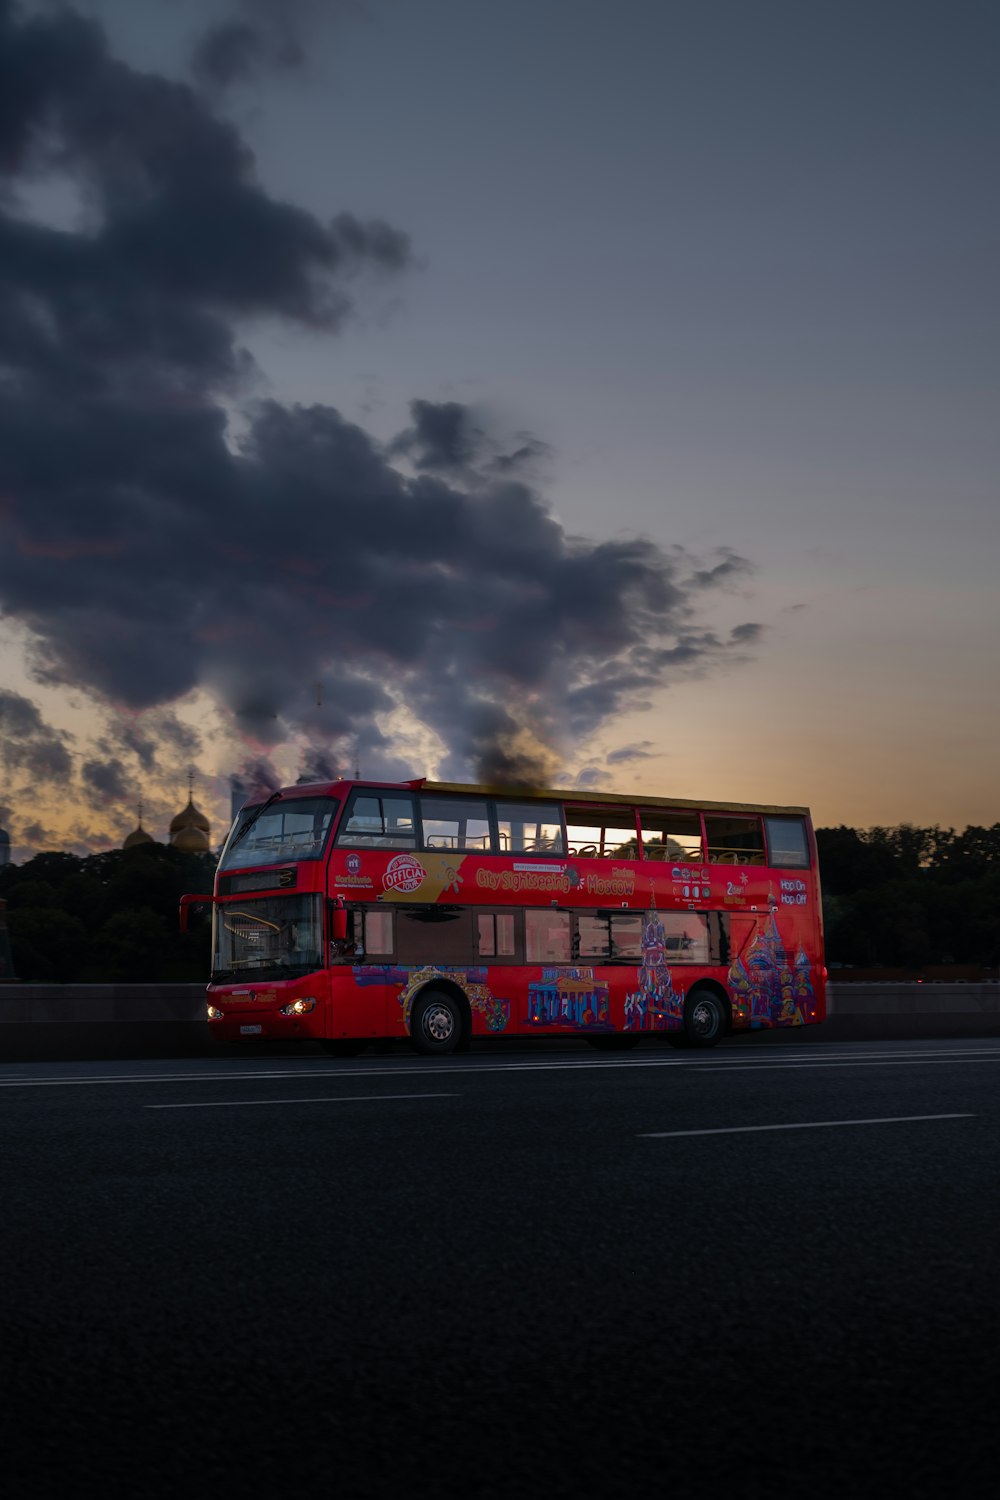 bus à impériale rouge sur la route sous un ciel nuageux pendant la journée